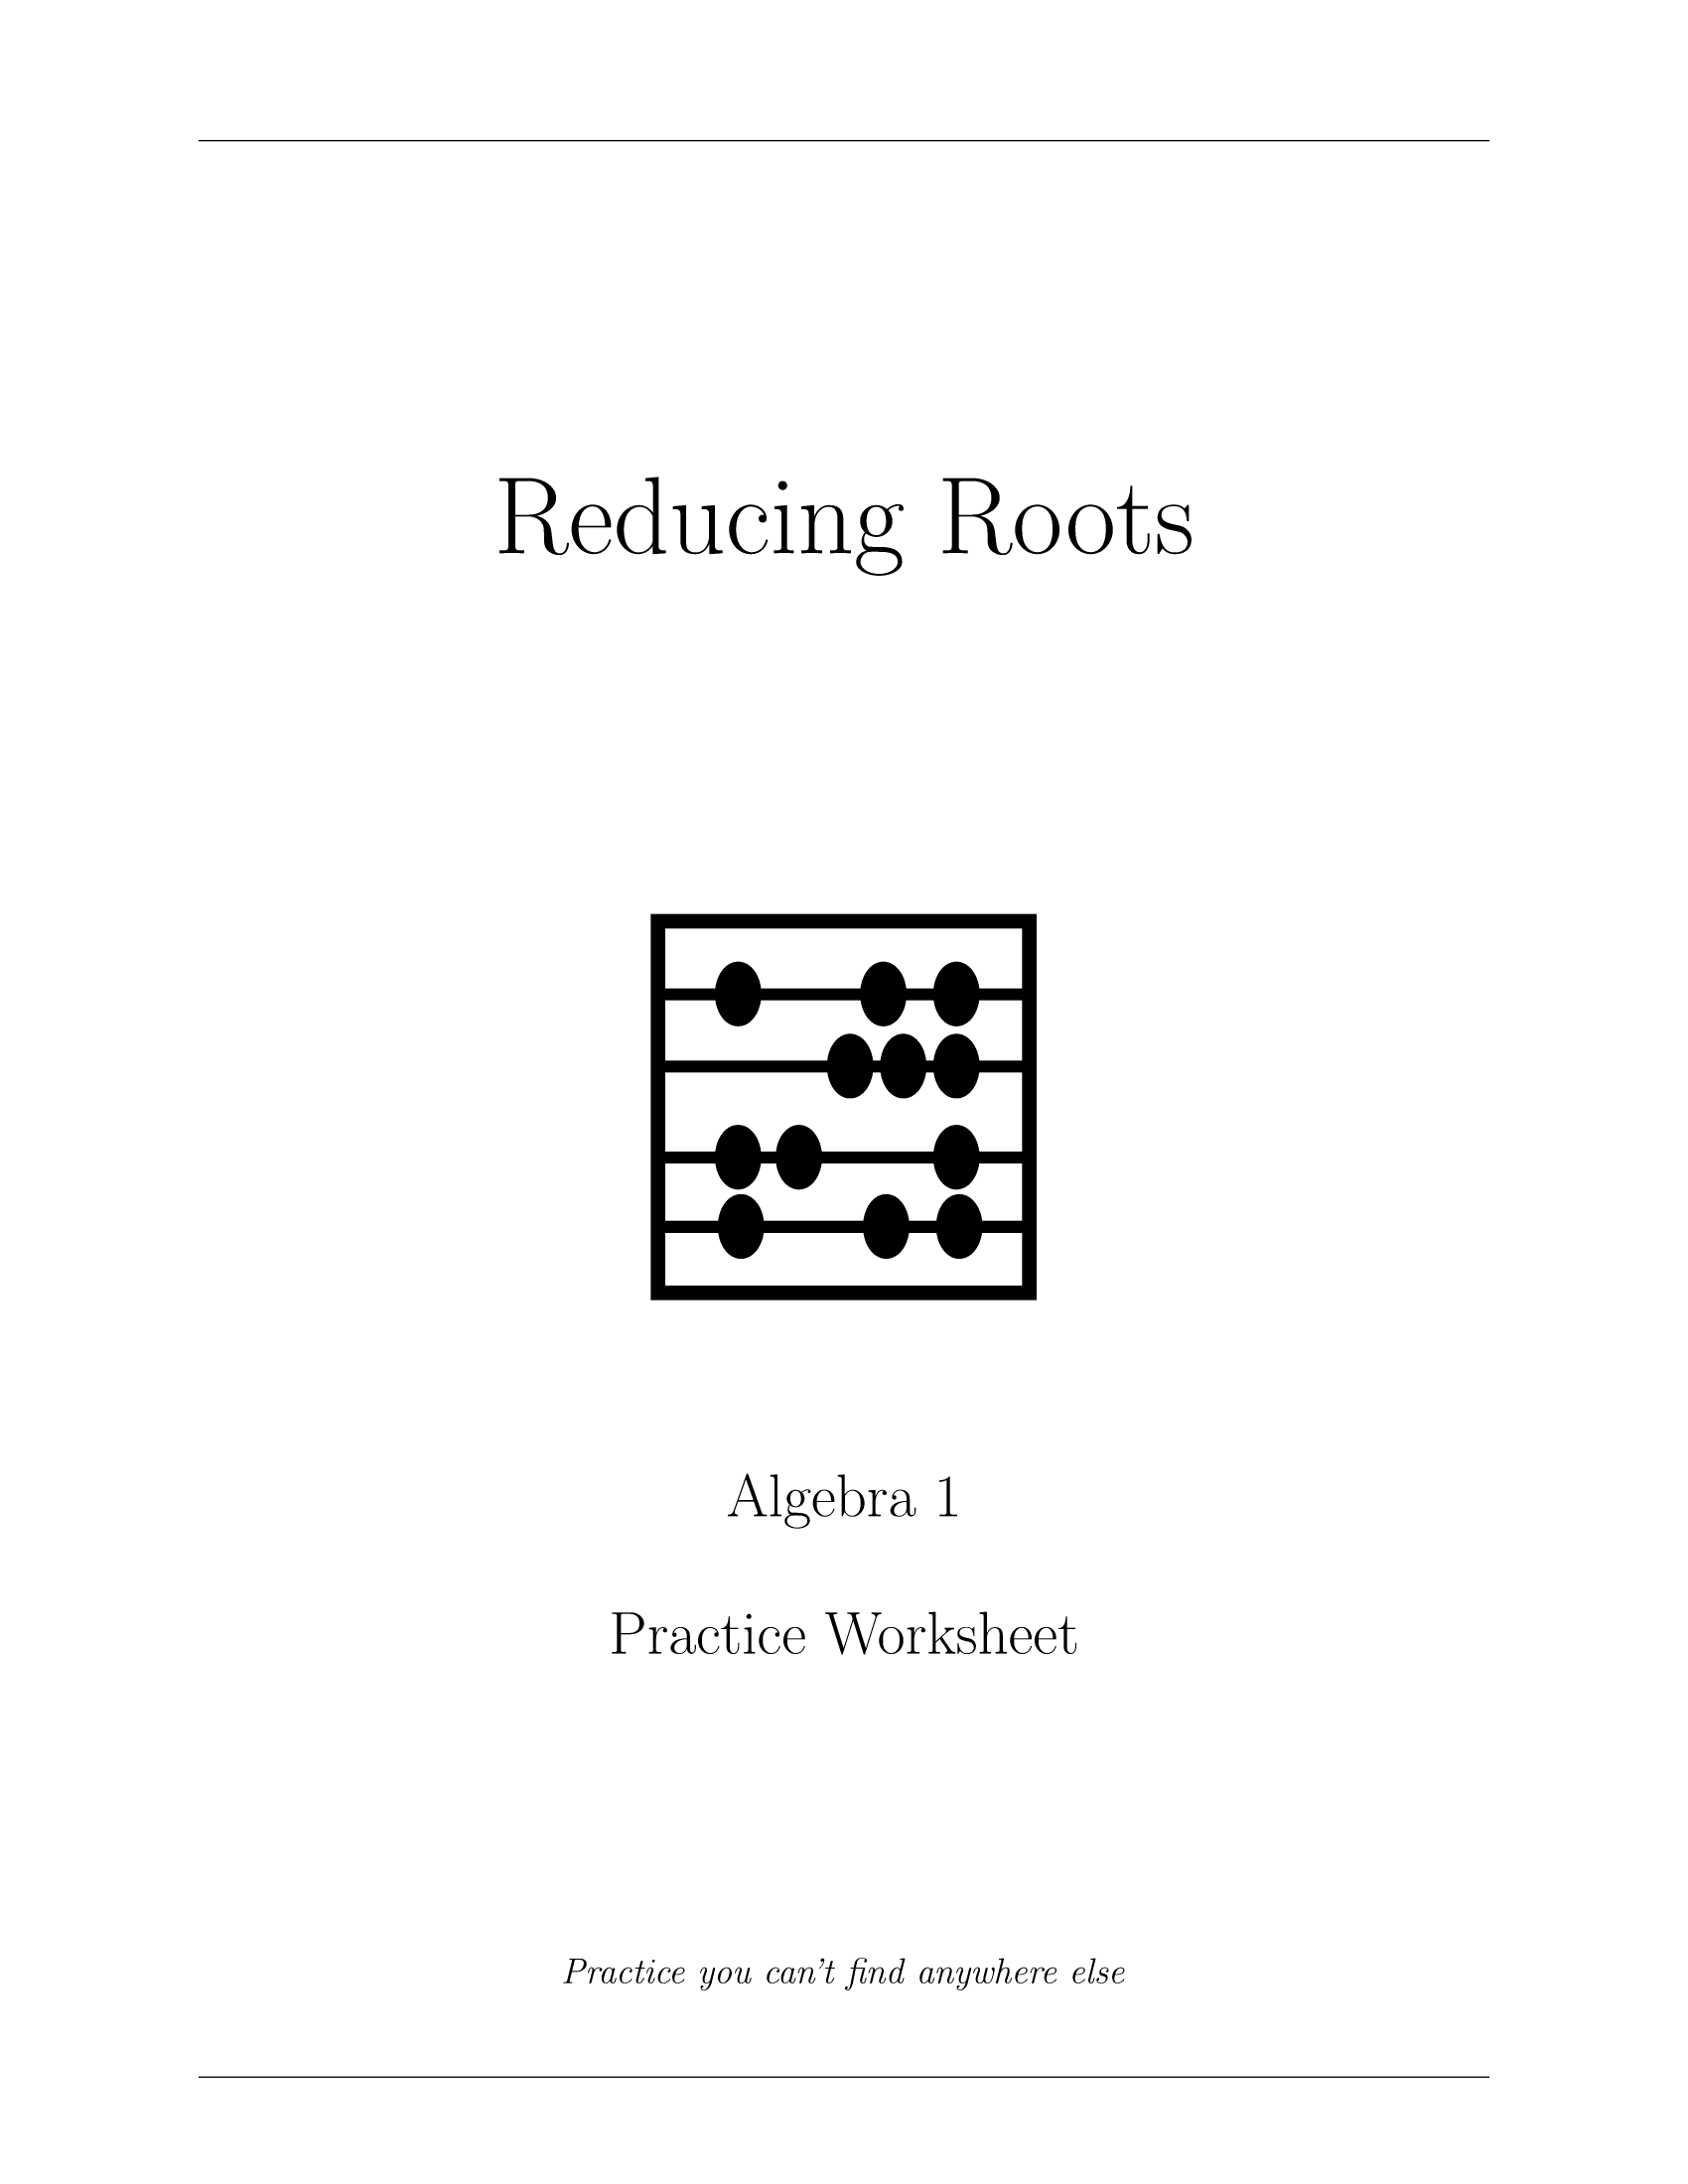 Reducing Roots Worksheet_1